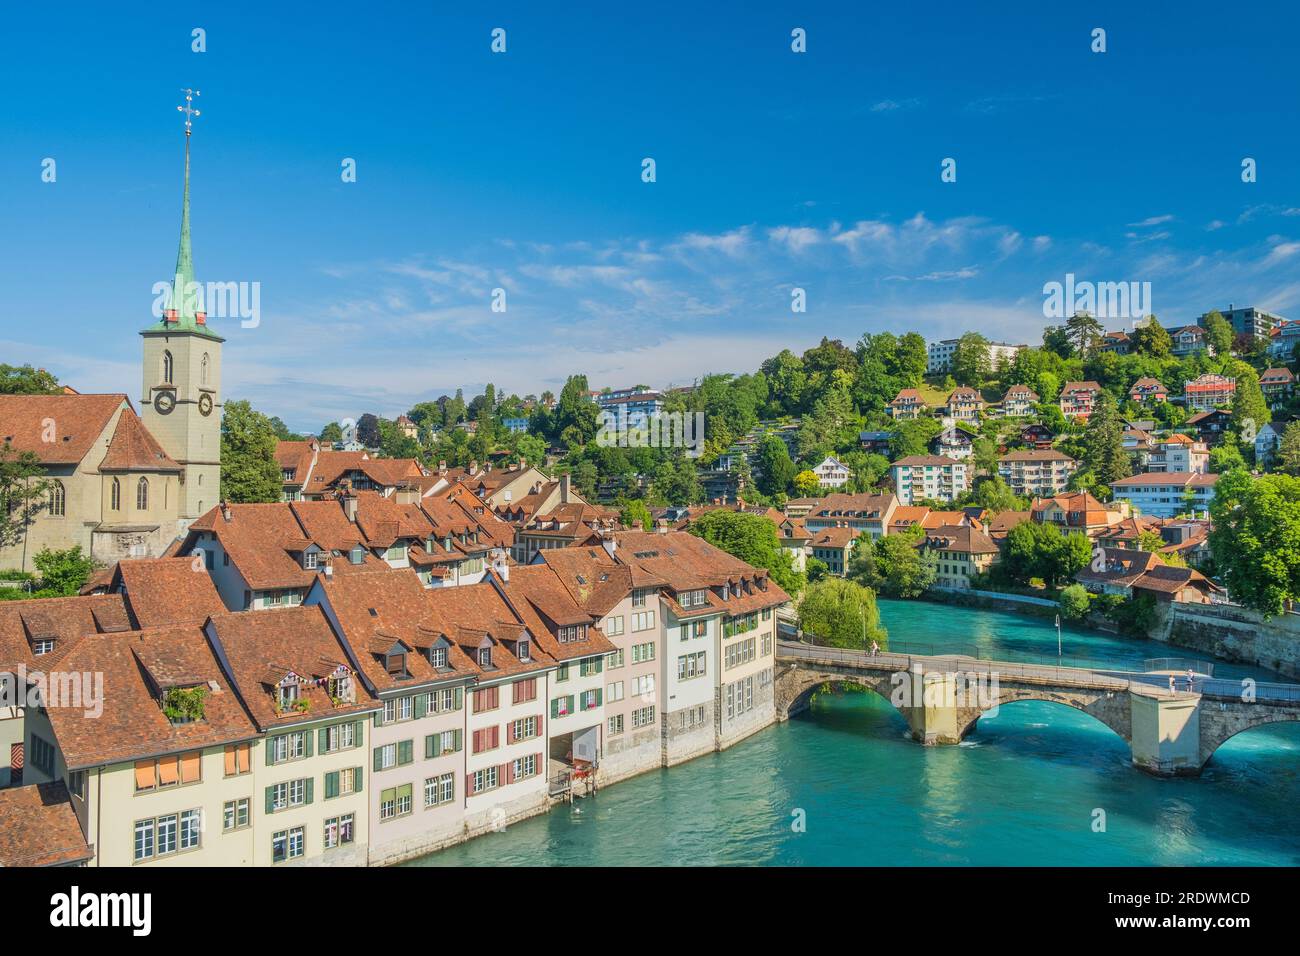 Vue panoramique sur la rivière Aare, le pont Untertorbrucke et la vieille ville de Berne, Suisse Banque D'Images